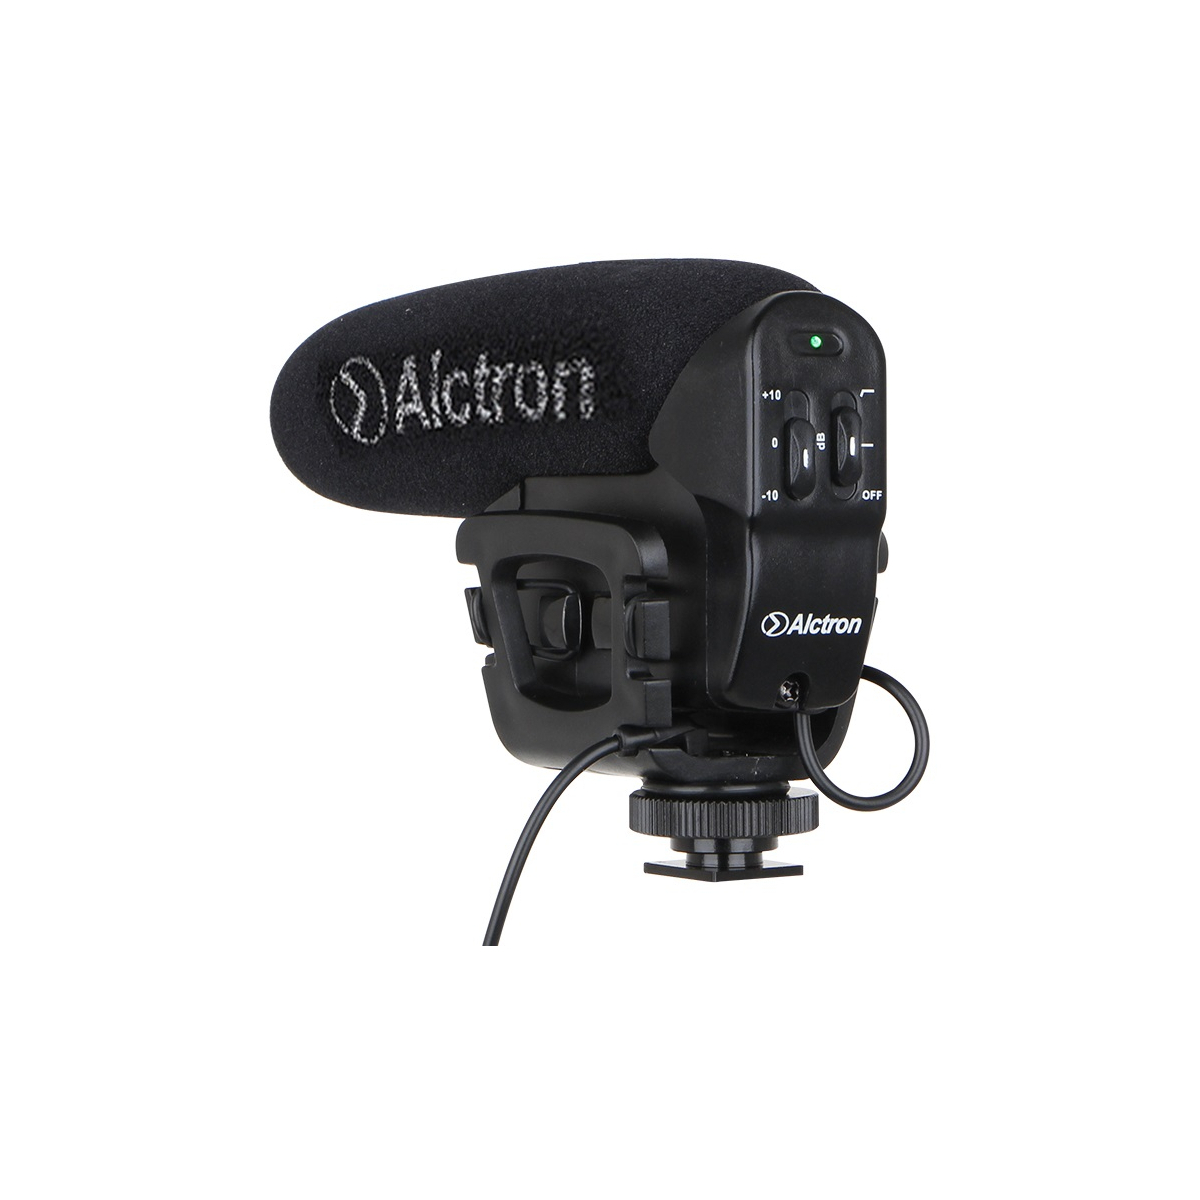 Micros caméras - Alctron - VM 6